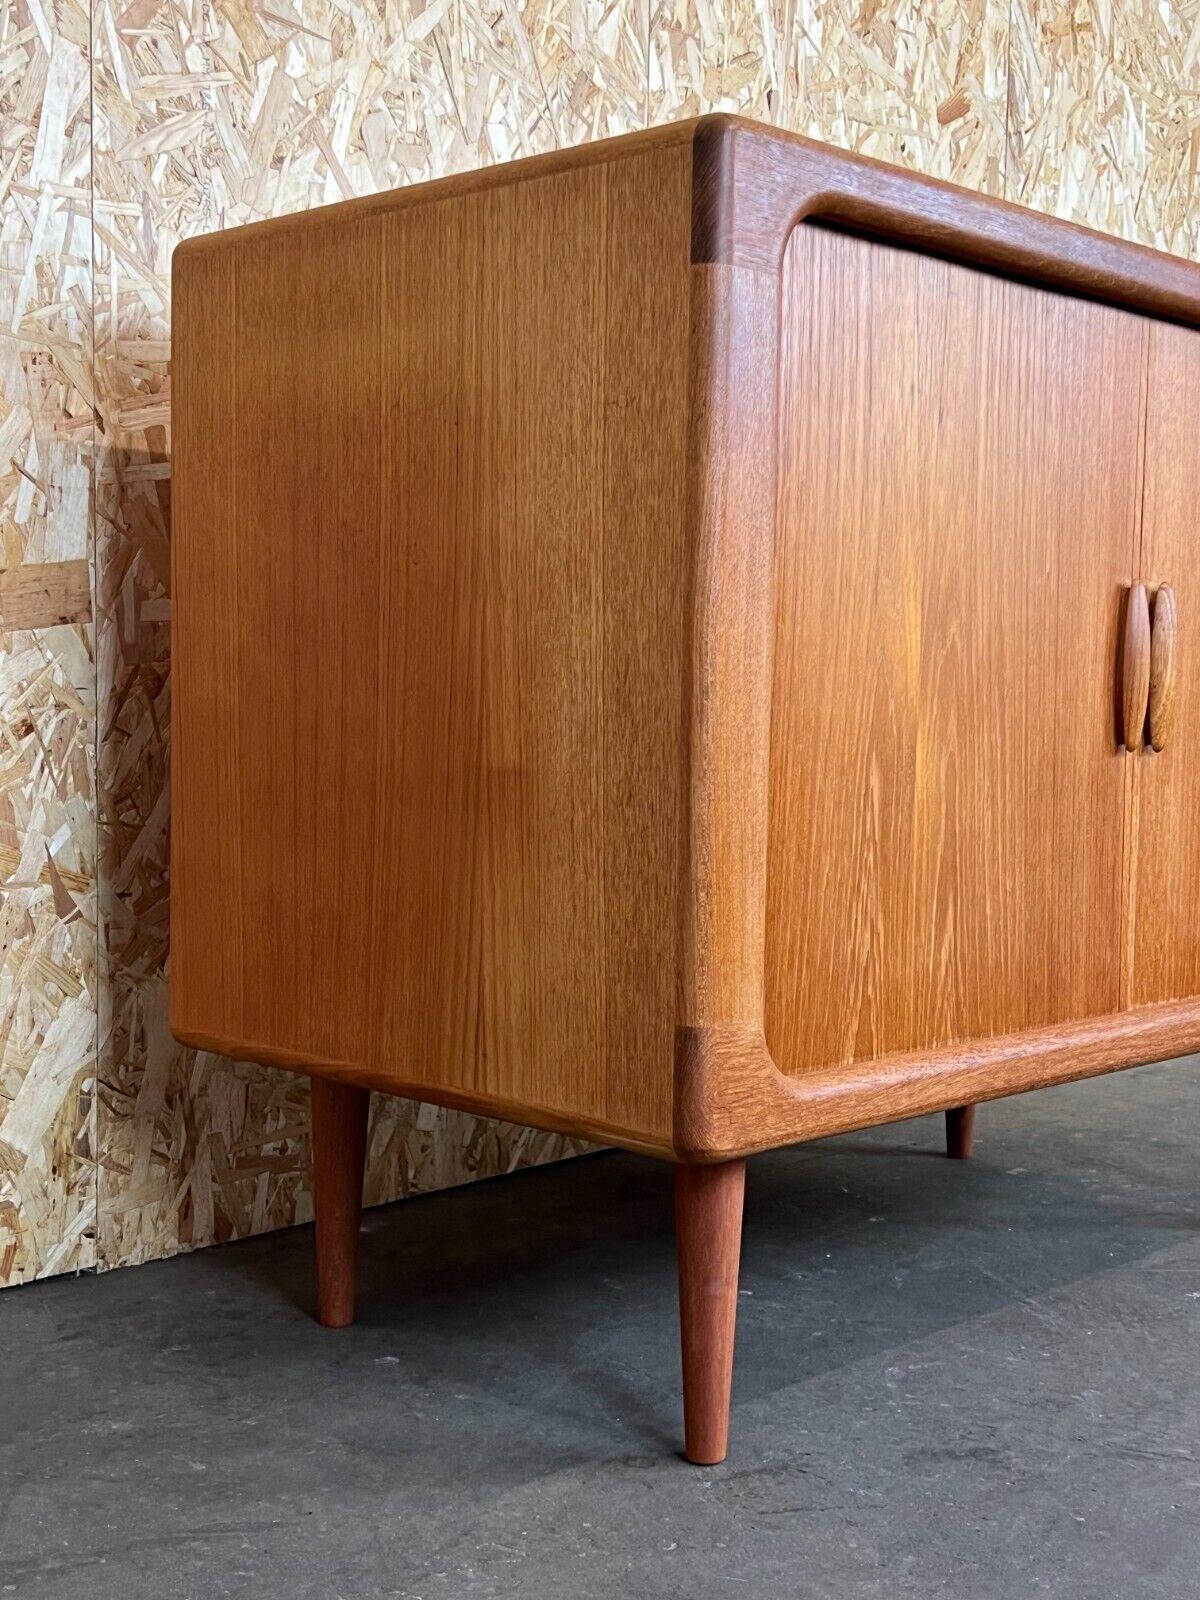 1960s-1970s Teak Dyrlund Sideboard Credenza Cabinet Danish Modern Design 3